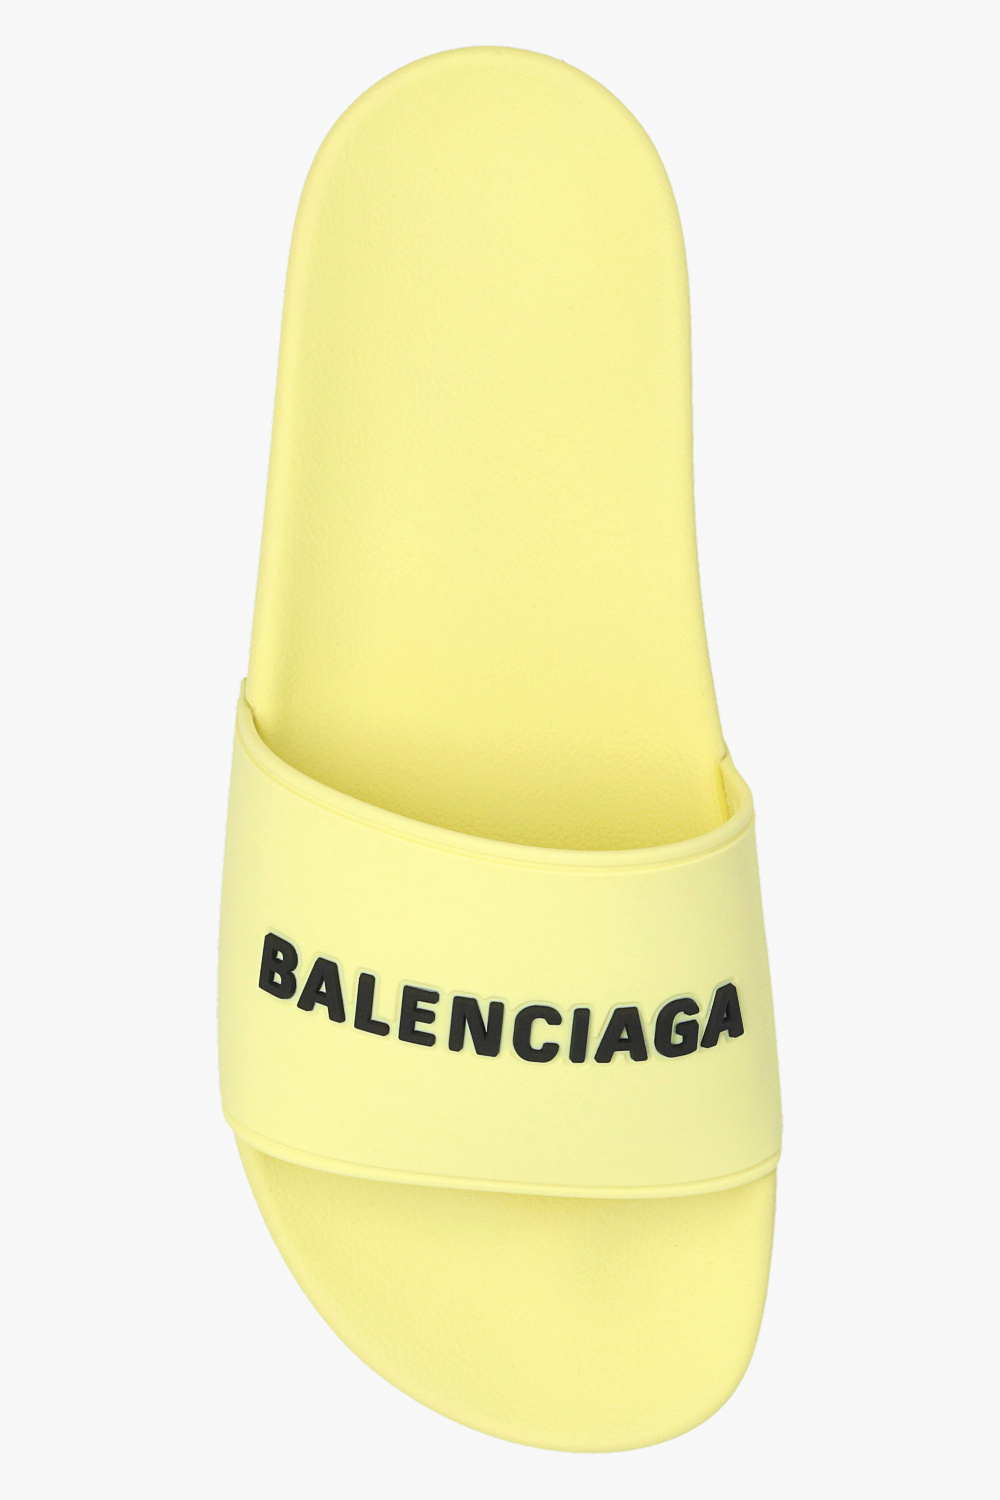 Balenciaga zapatillas de running neutro constitución media amarillas más de 100